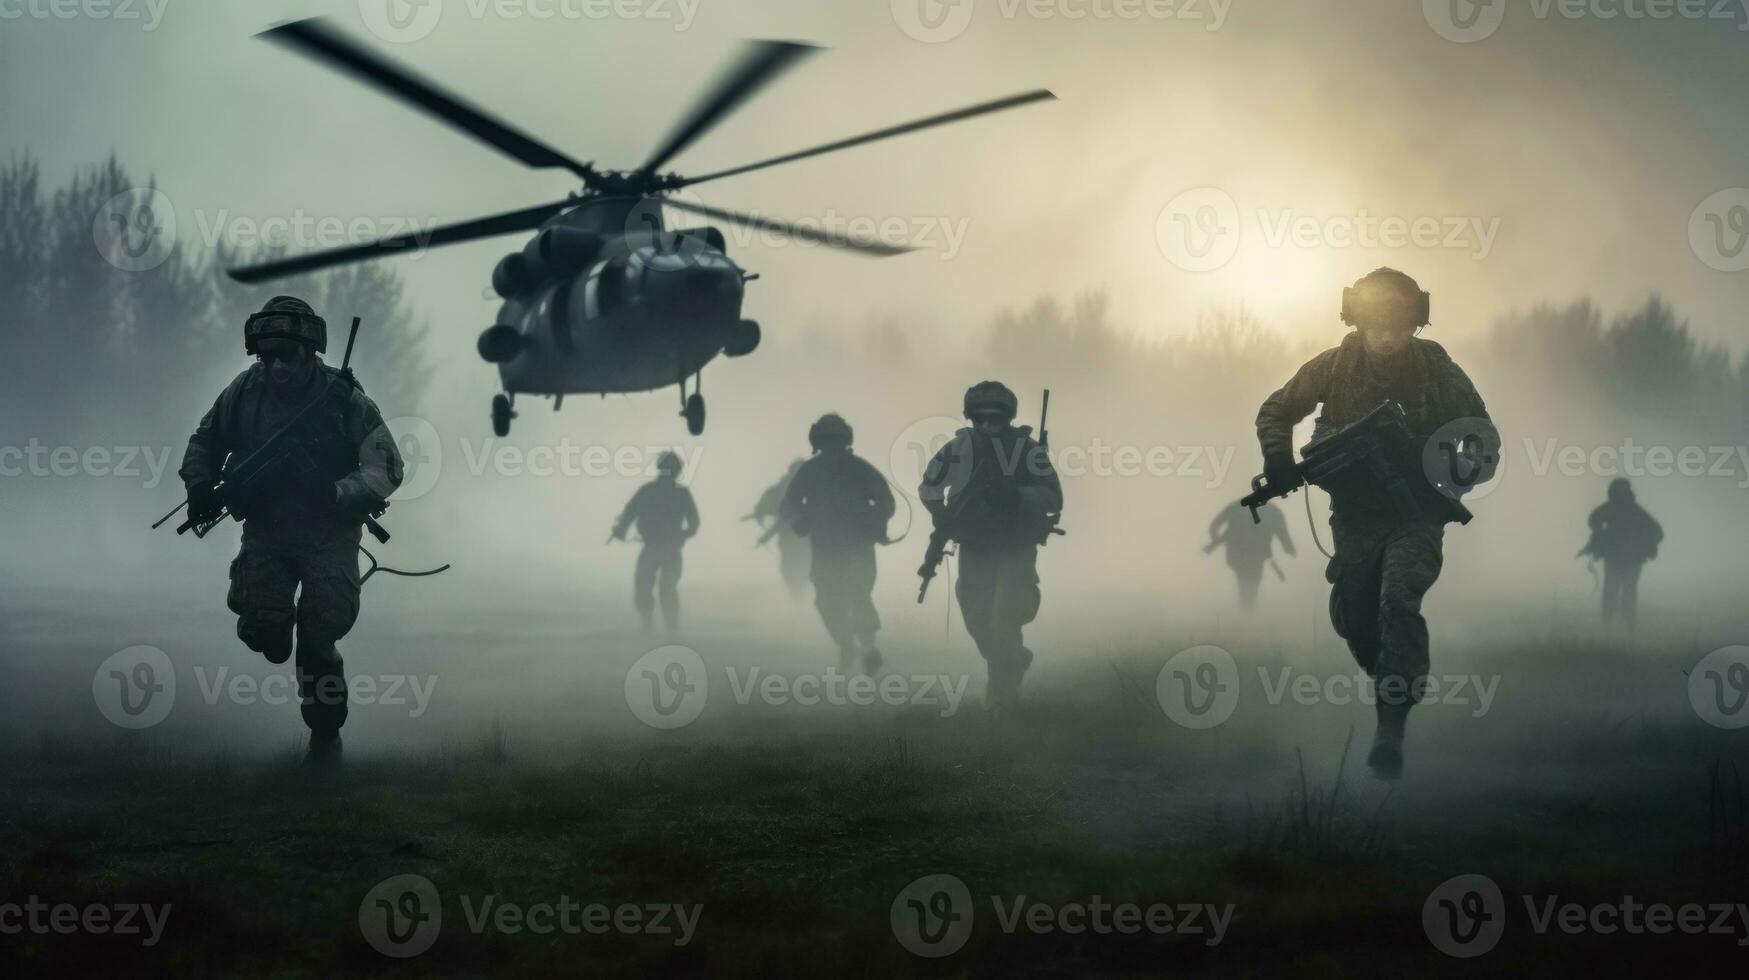 leger soldaten zijn rennen naar de helikopter in de slagveld. temidden van de stof en chaos van de slagveld, de soldaten in rekening brengen naar de helikopter met onwankelbaar focus foto